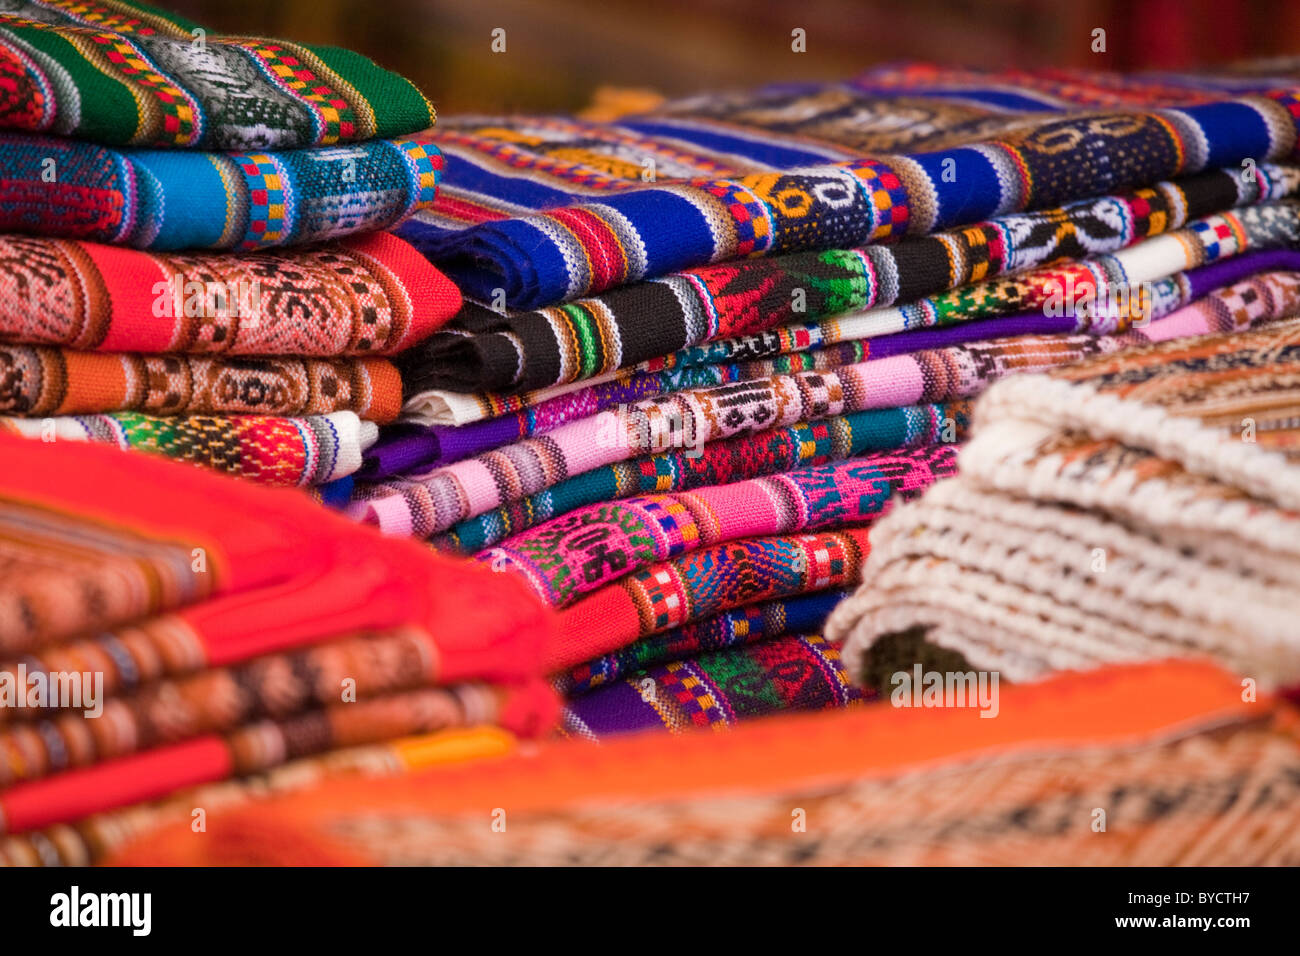 Materiale e stoffa tipica del Sud America in vendita presso i mercati locali, Perù. Foto Stock